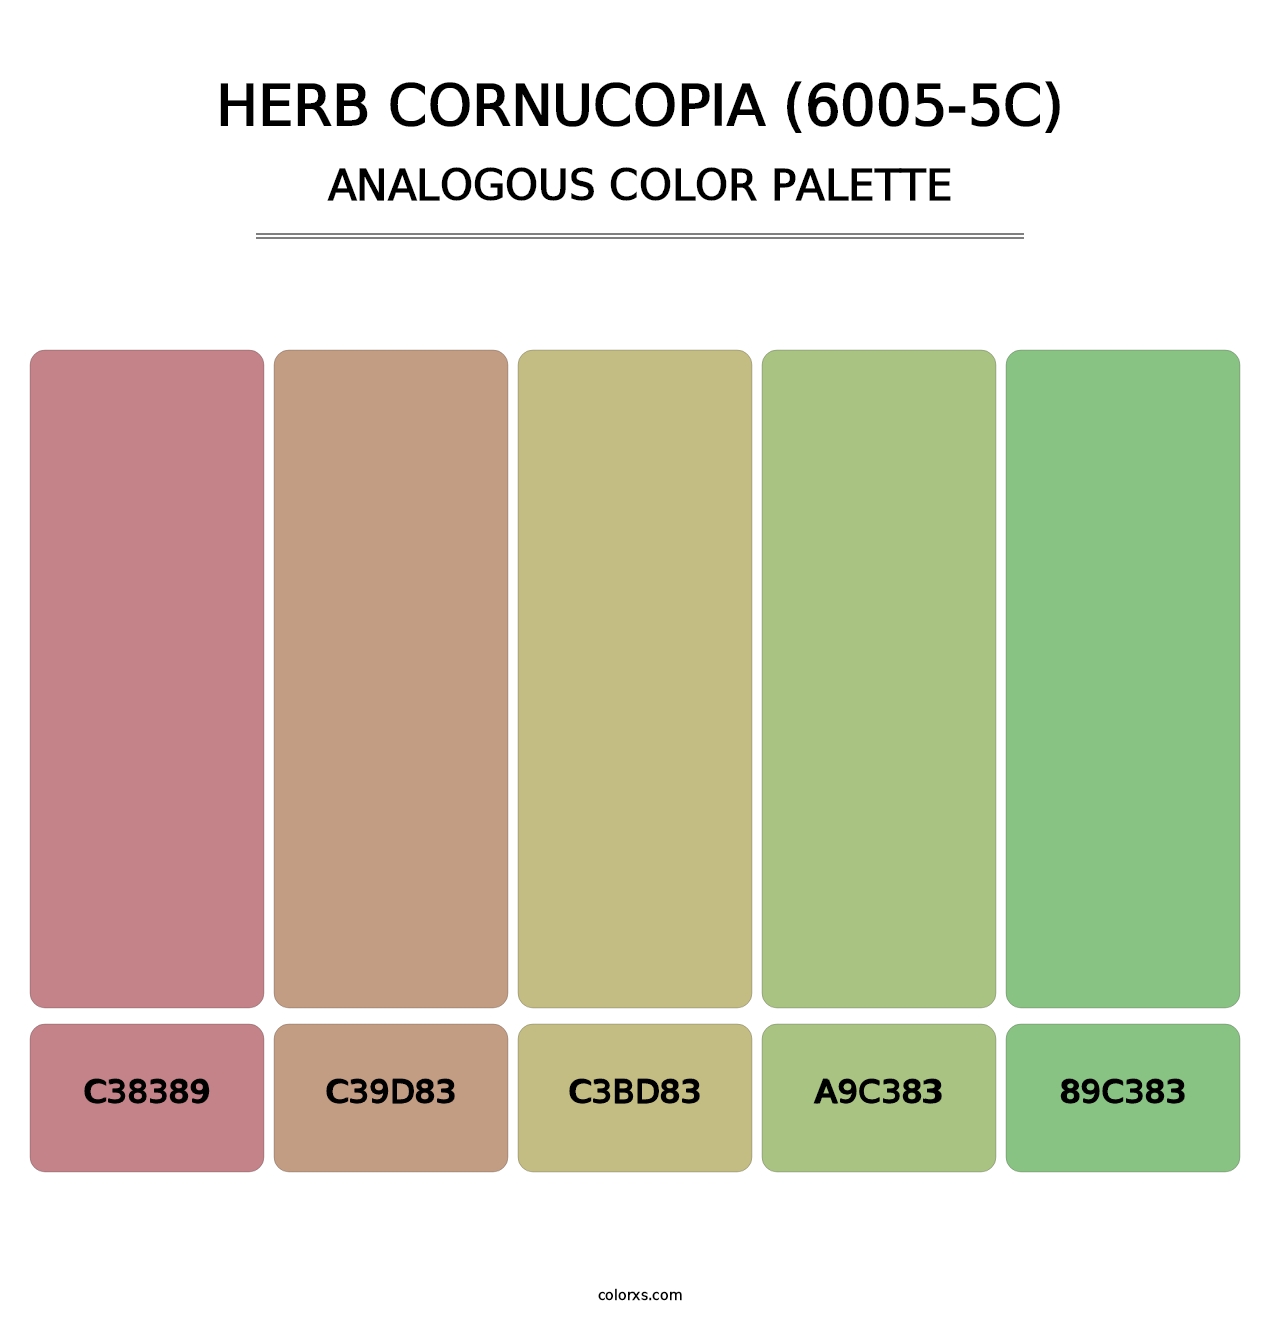 Herb Cornucopia (6005-5C) - Analogous Color Palette